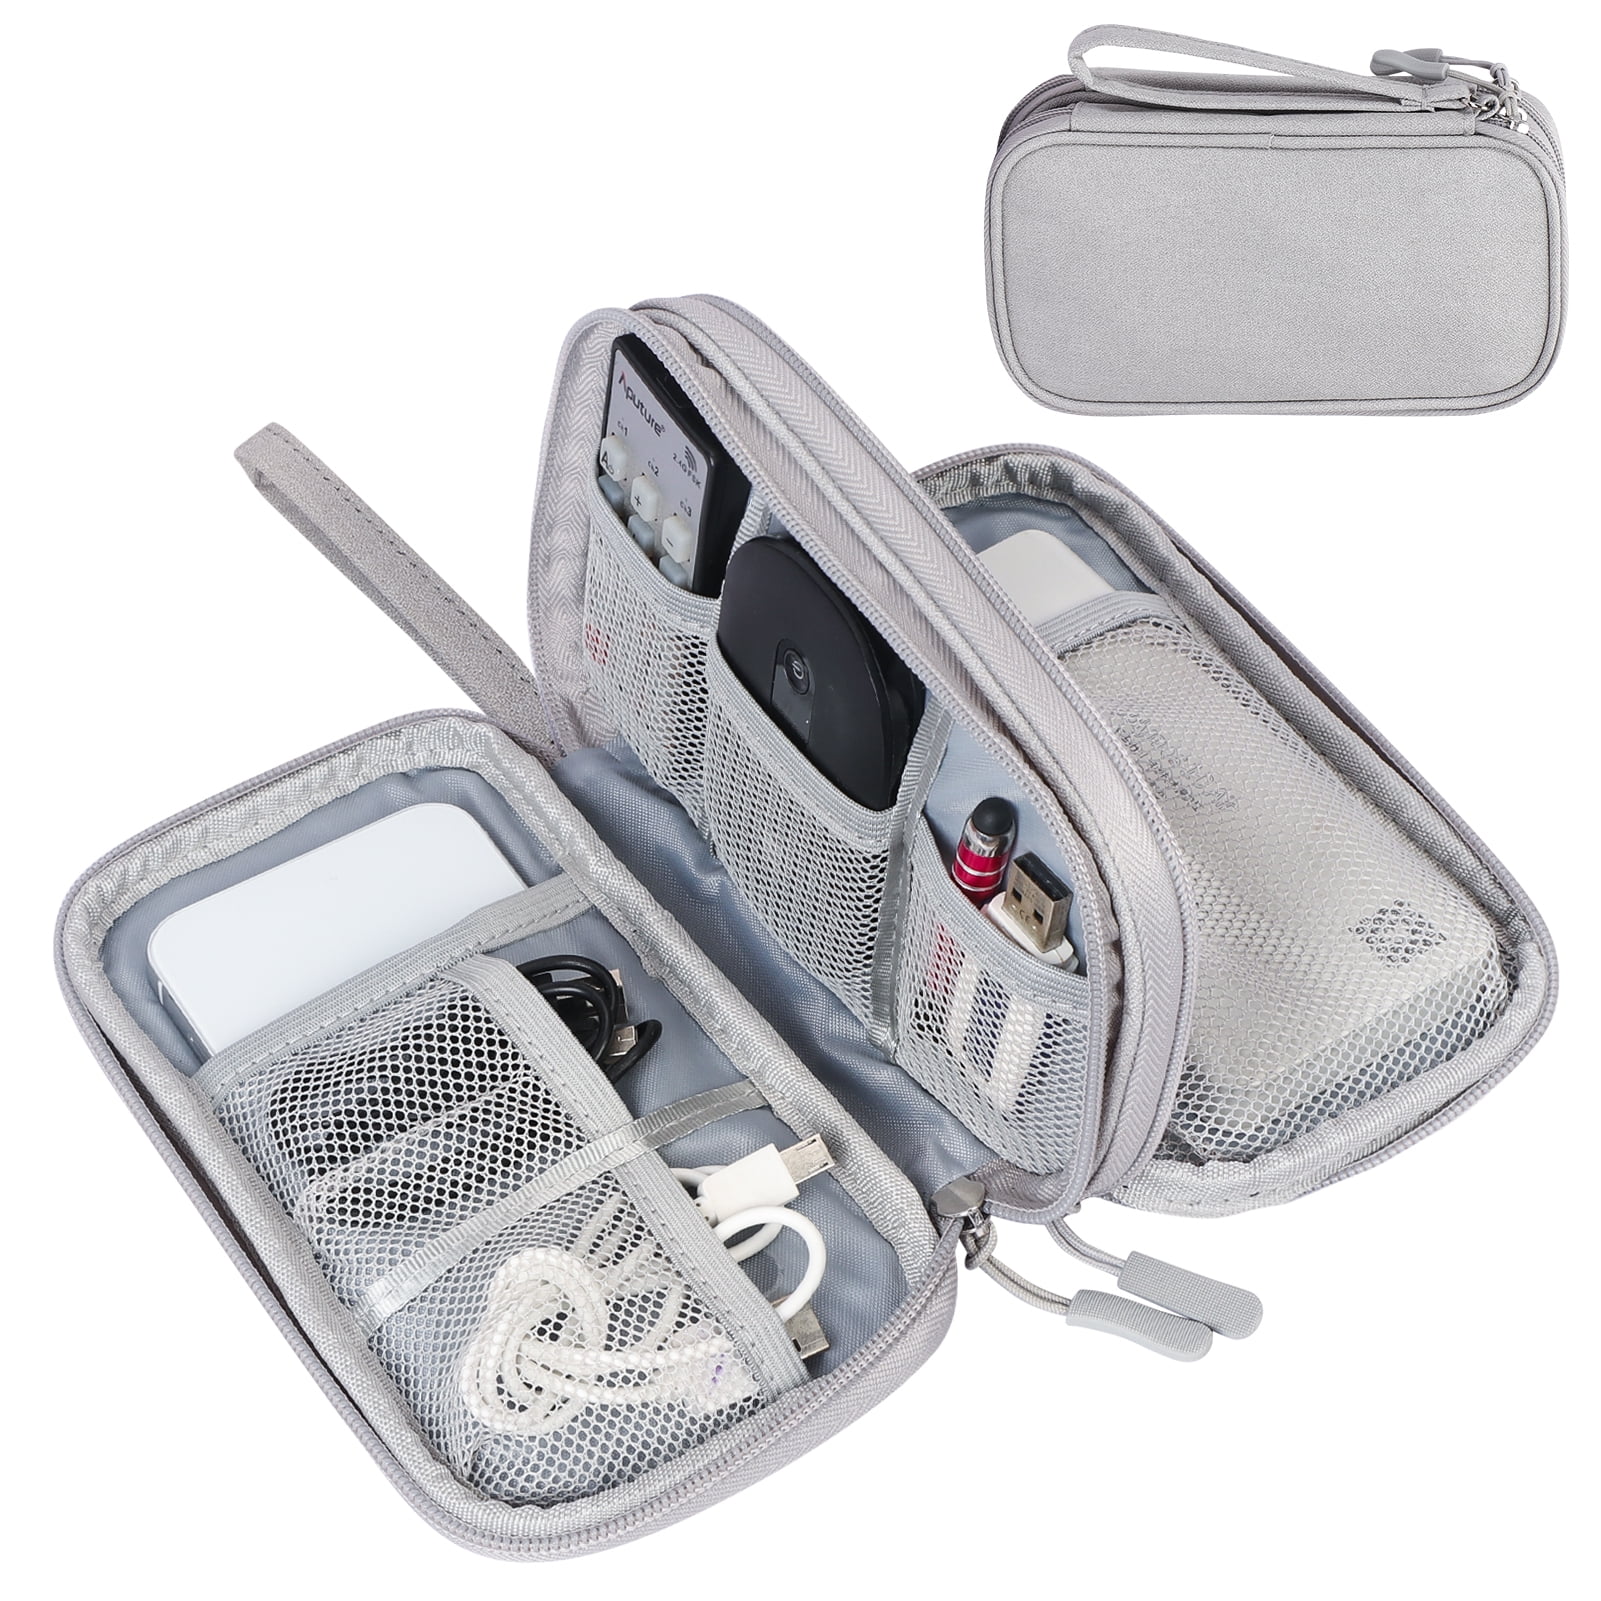 Electronic Organizer Bag, Portable Double-Layers Travel Cable Organizer  Case Electronic Accessories …See more Electronic Organizer Bag, Portable